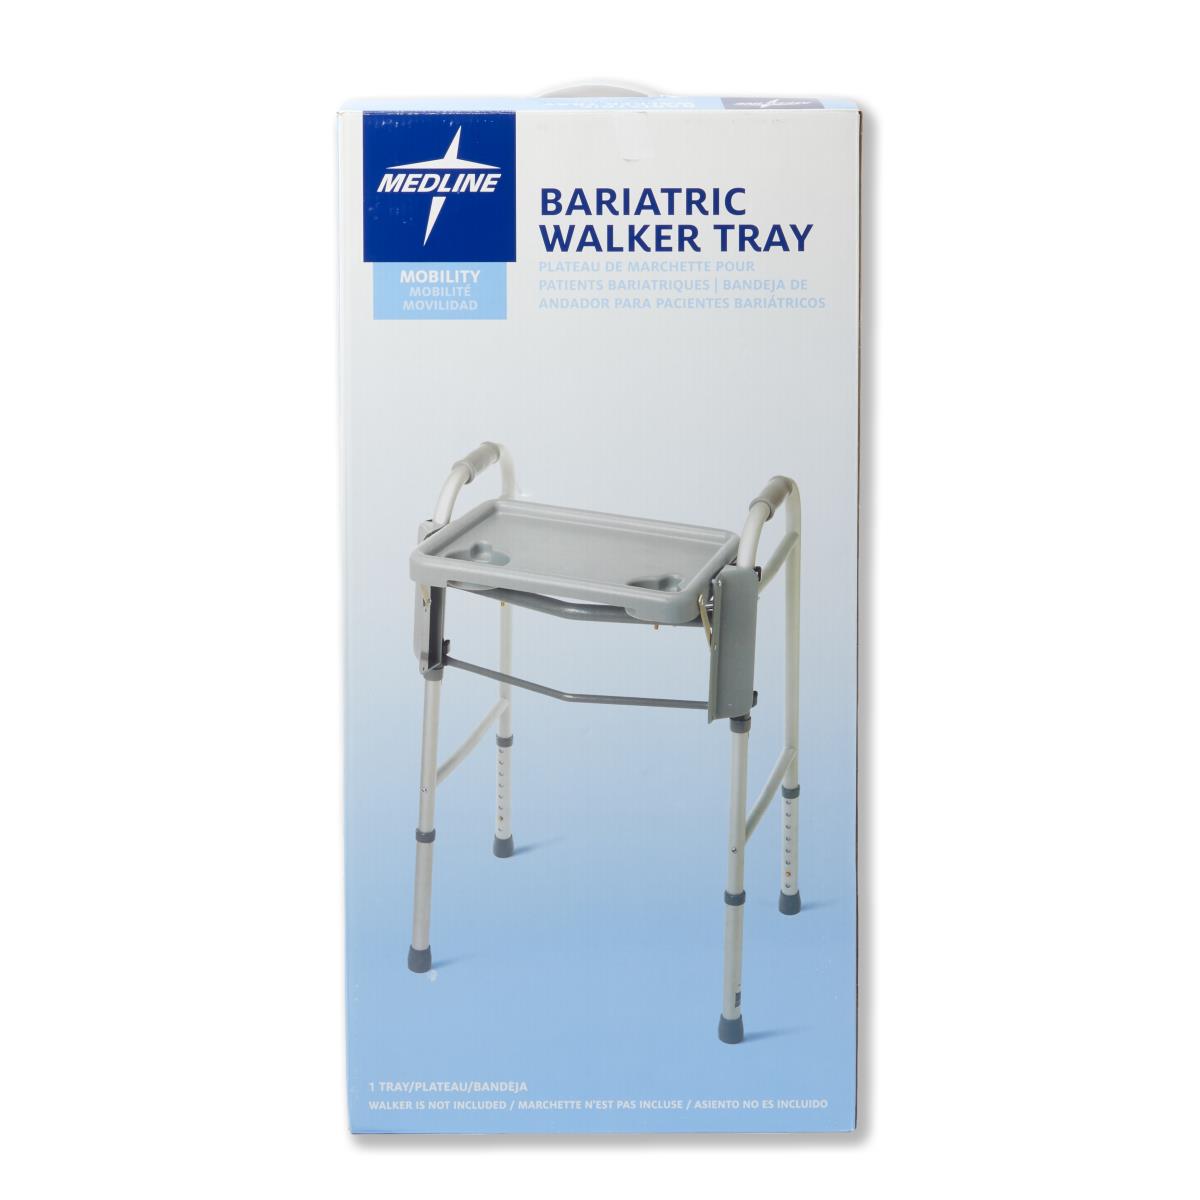 Medline Bariatric Walker Tray